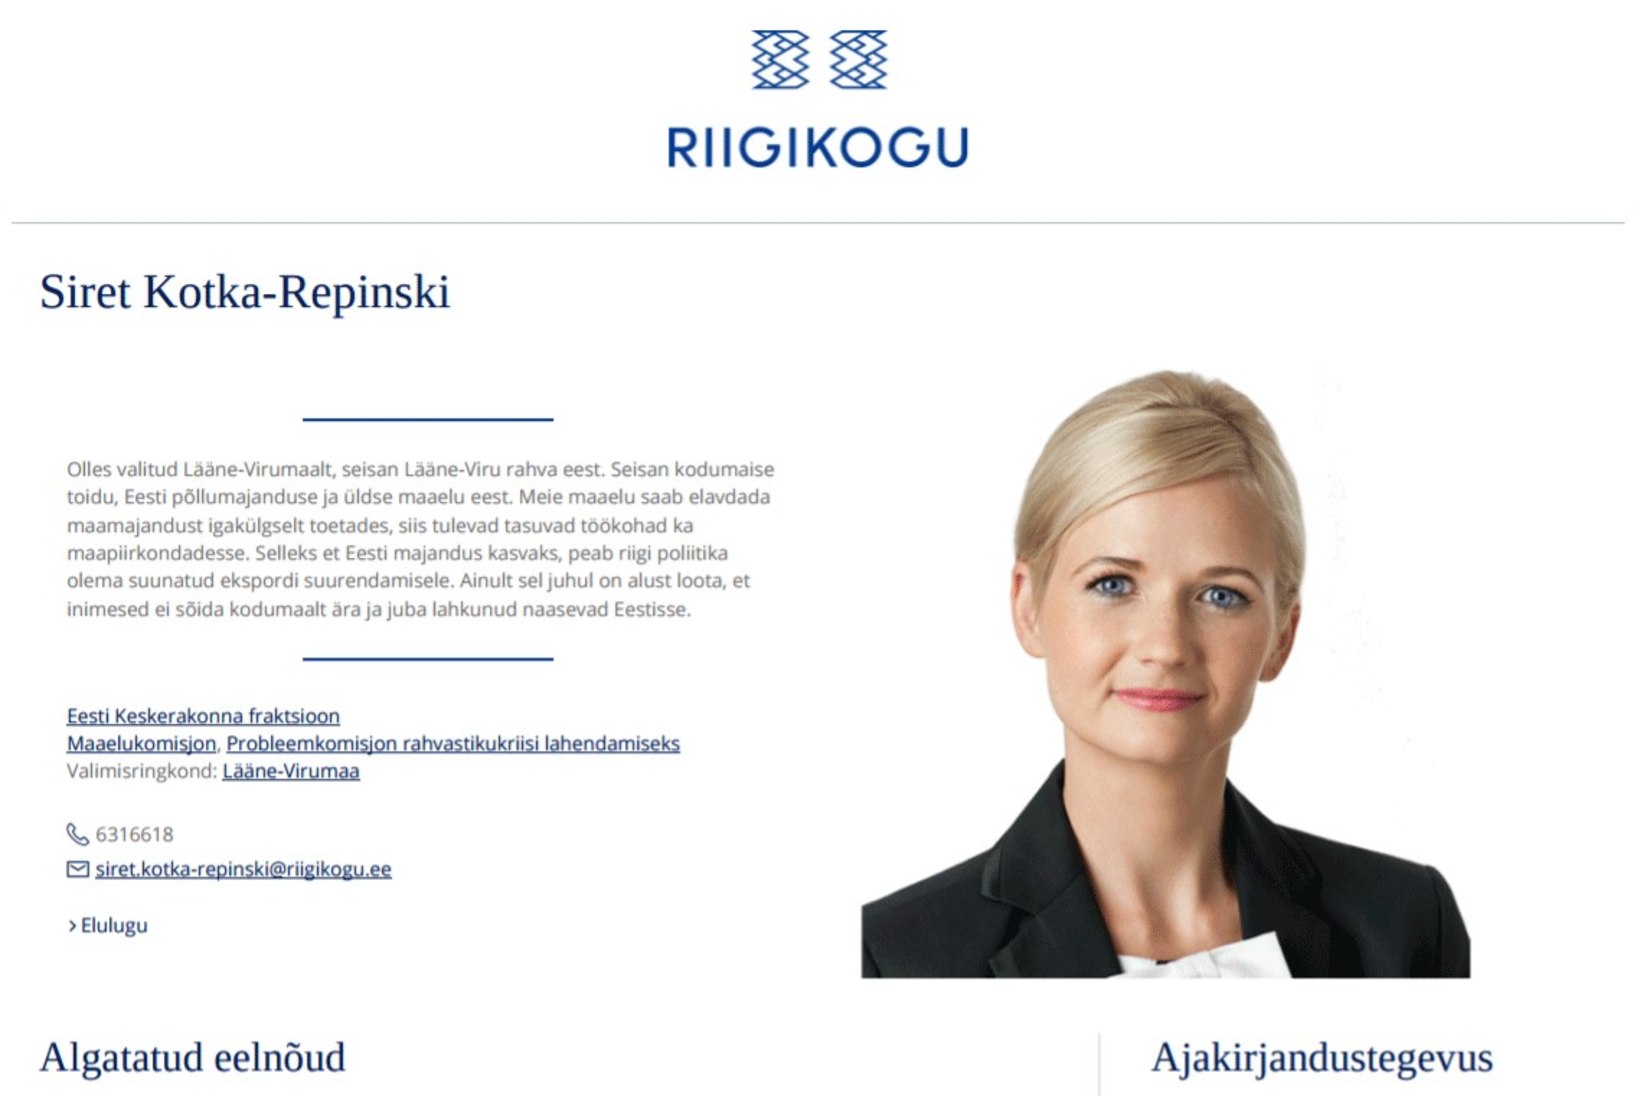 PILTUUDIS | Vaata, kuidas näeb Siret Kotka-Repinski uuenenud nimi välja riigikogu veebilehel 